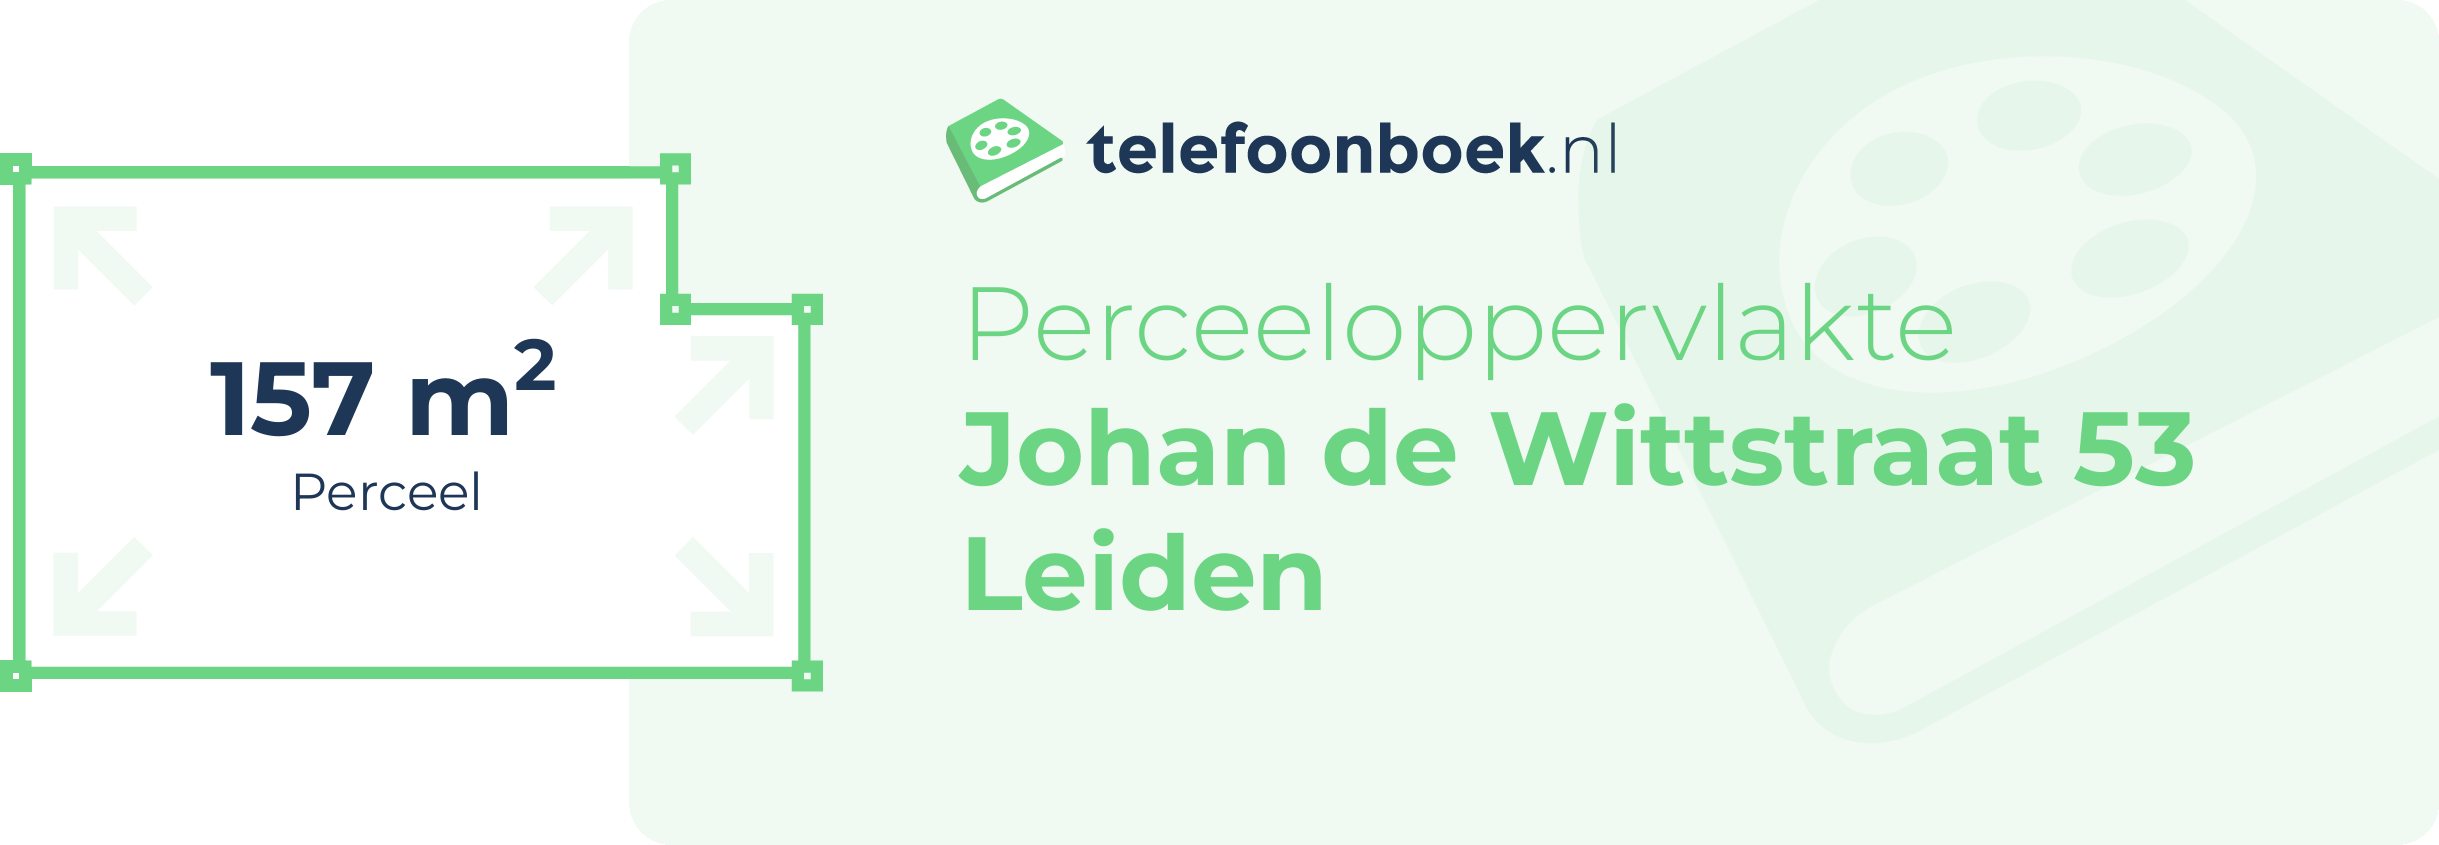 Perceeloppervlakte Johan De Wittstraat 53 Leiden